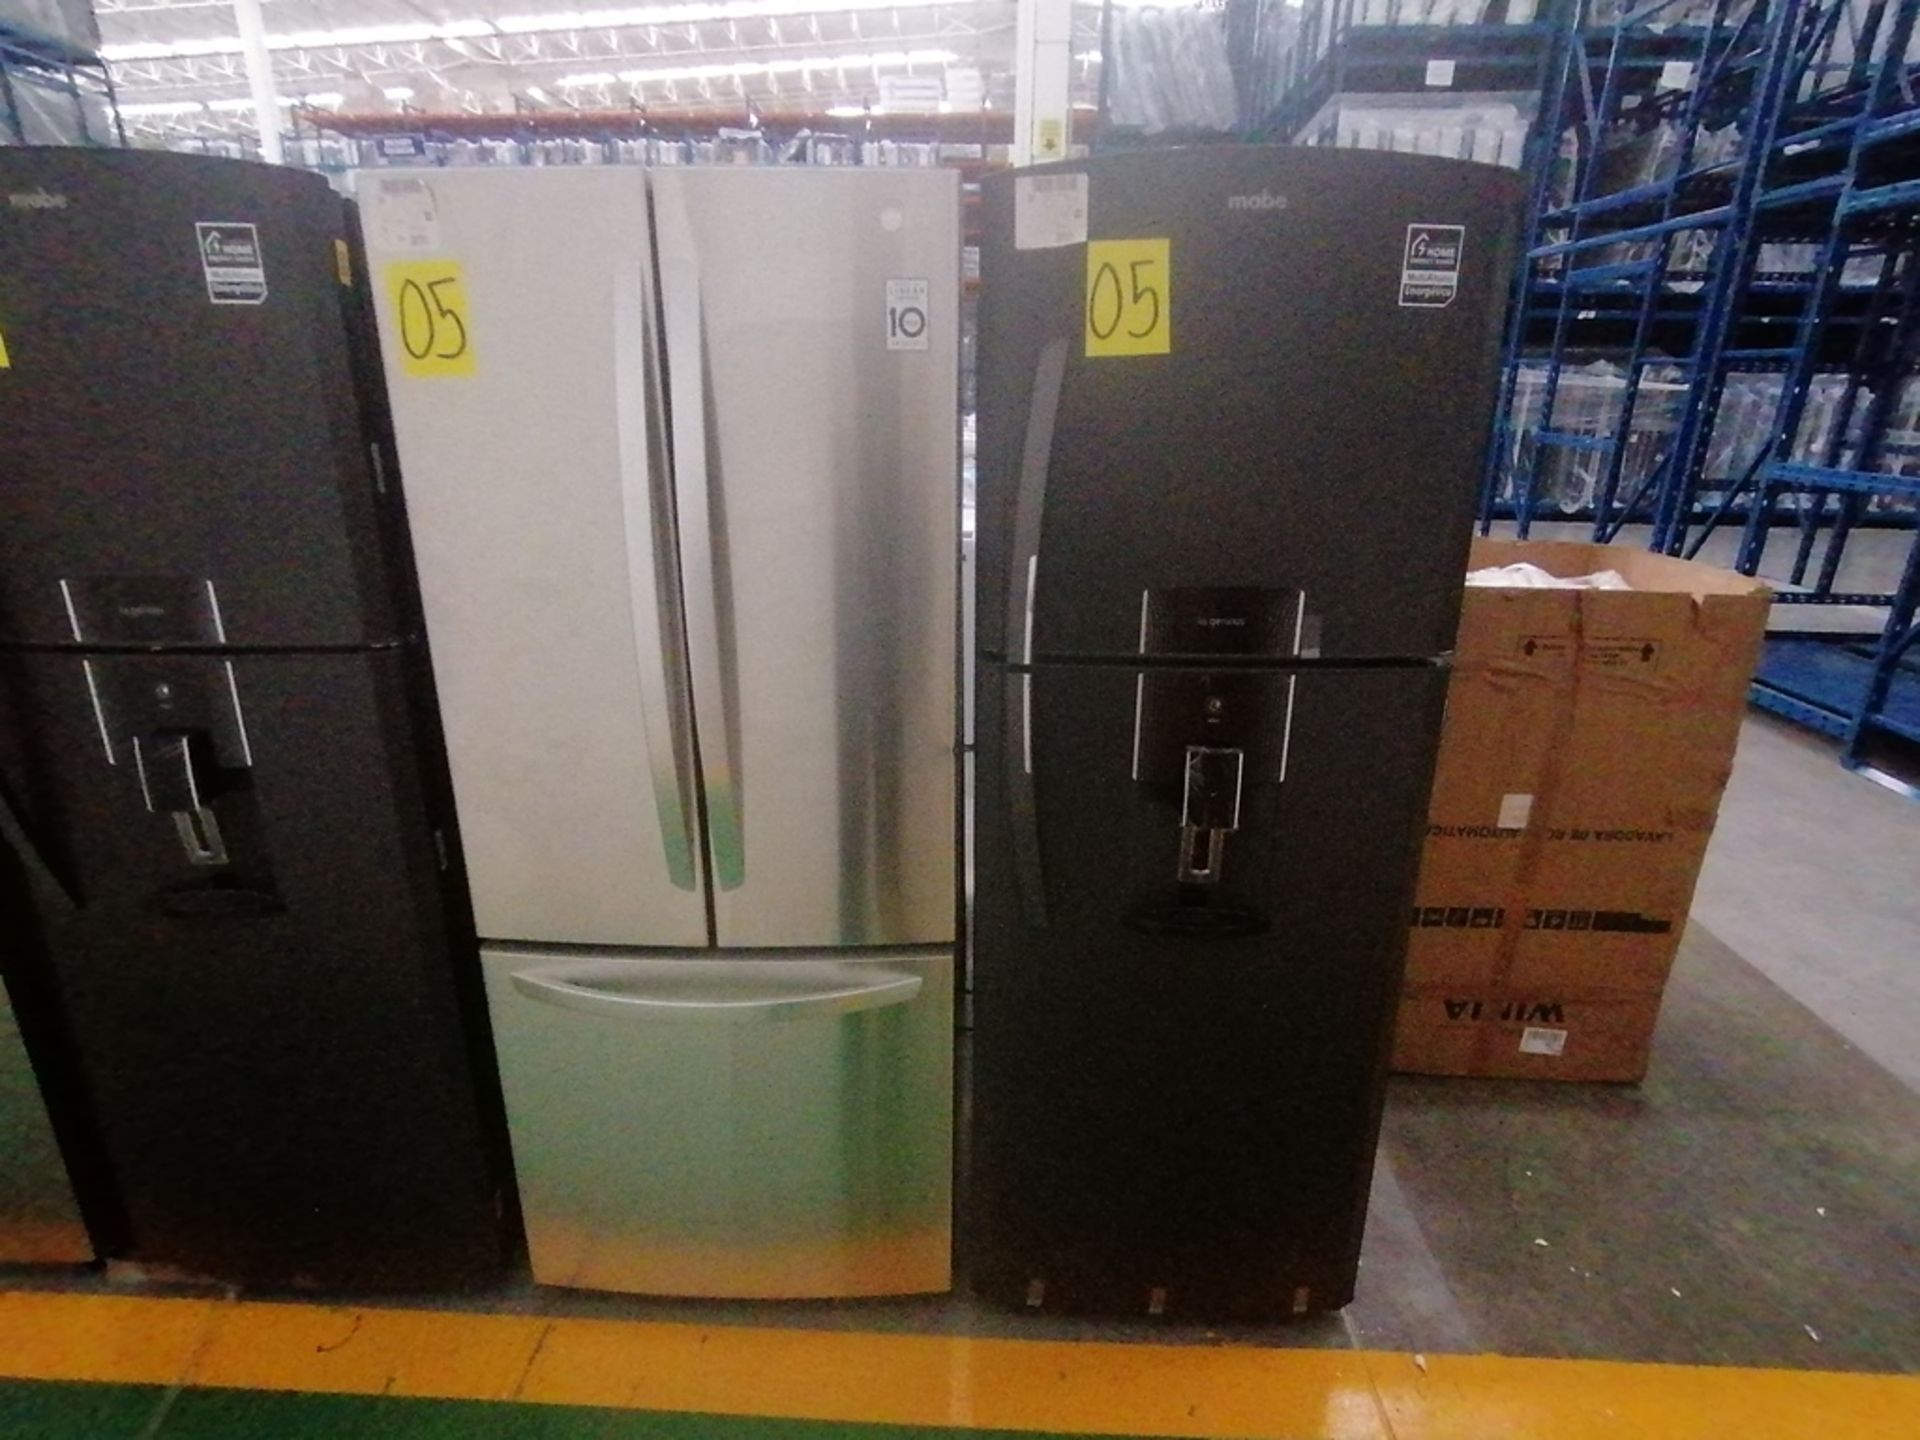 Lote de 2 refrigeradores incluye: 1 Refrigerador con dispensador de agua, Marca Mabe, Modelo RME360 - Image 4 of 15